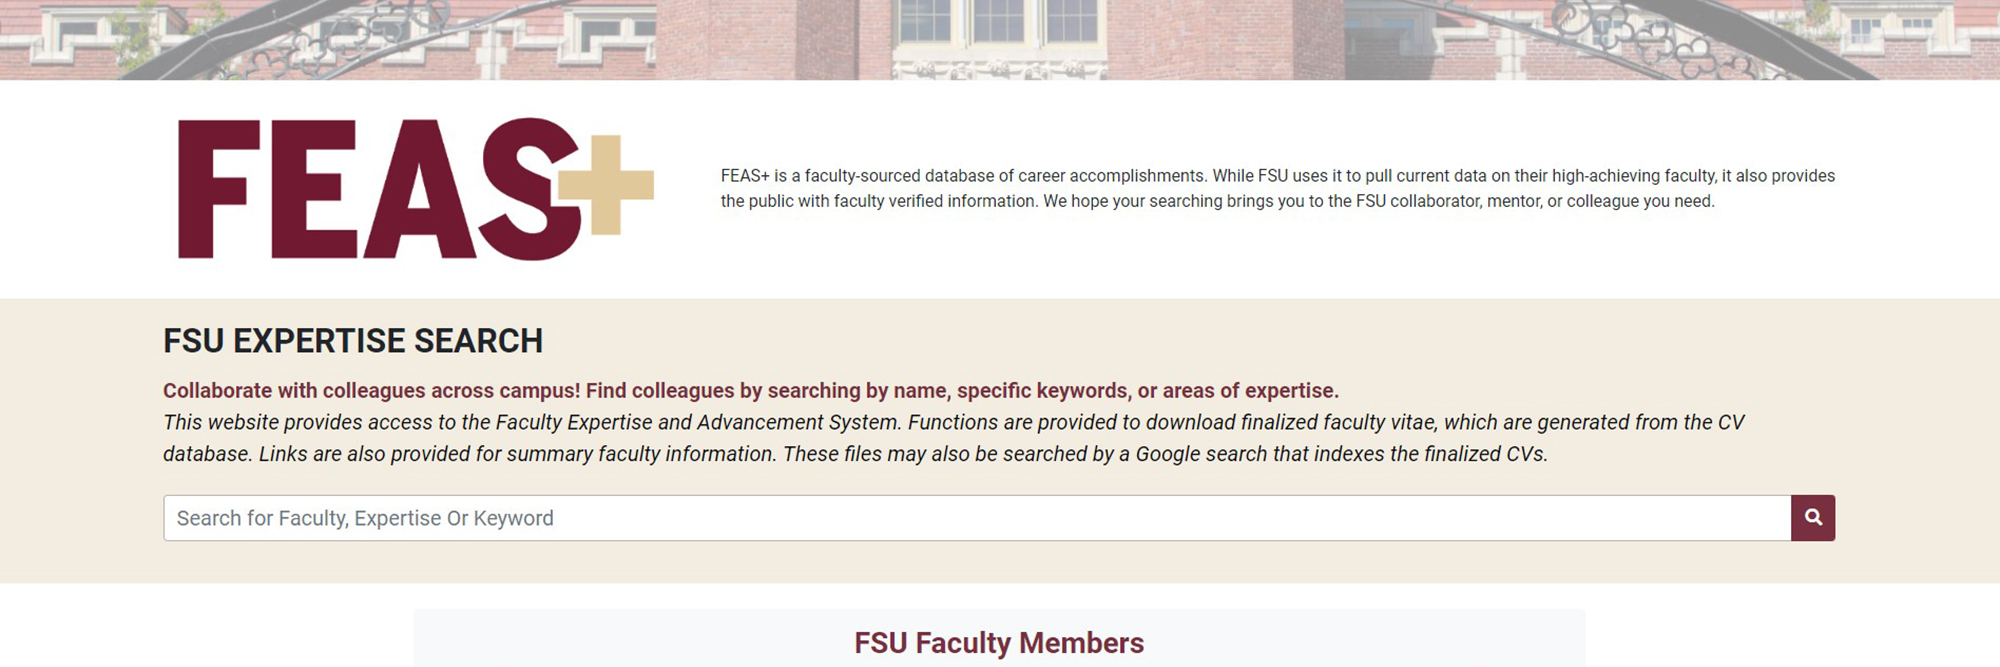 Screenshot of FEAS website